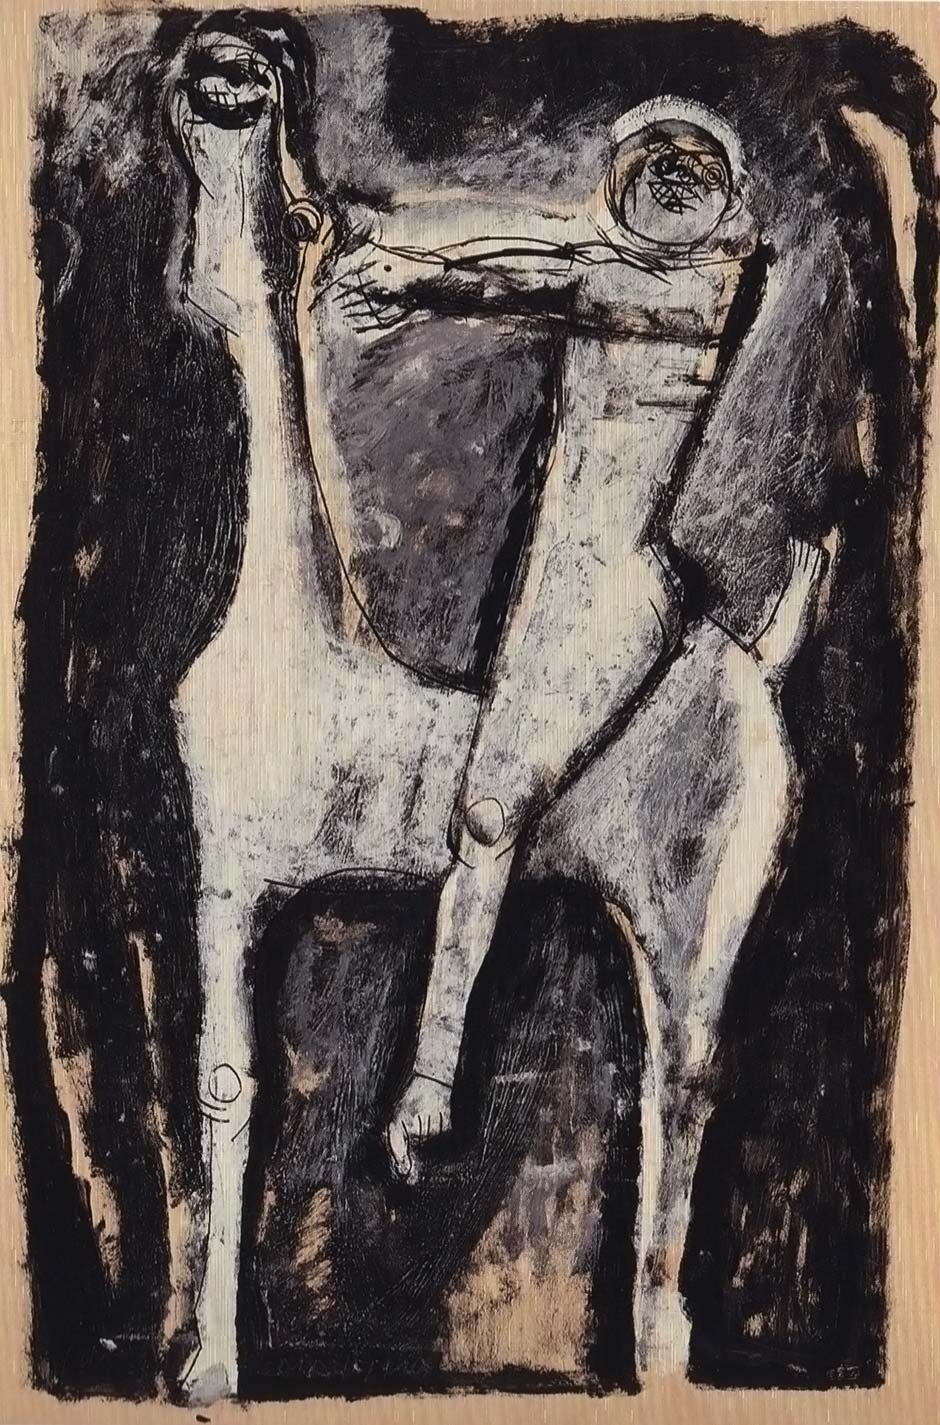 Marino Marini, Cavallo e cavaliere, 1955, tecnica mista su carta incollata su tela, collezione privata